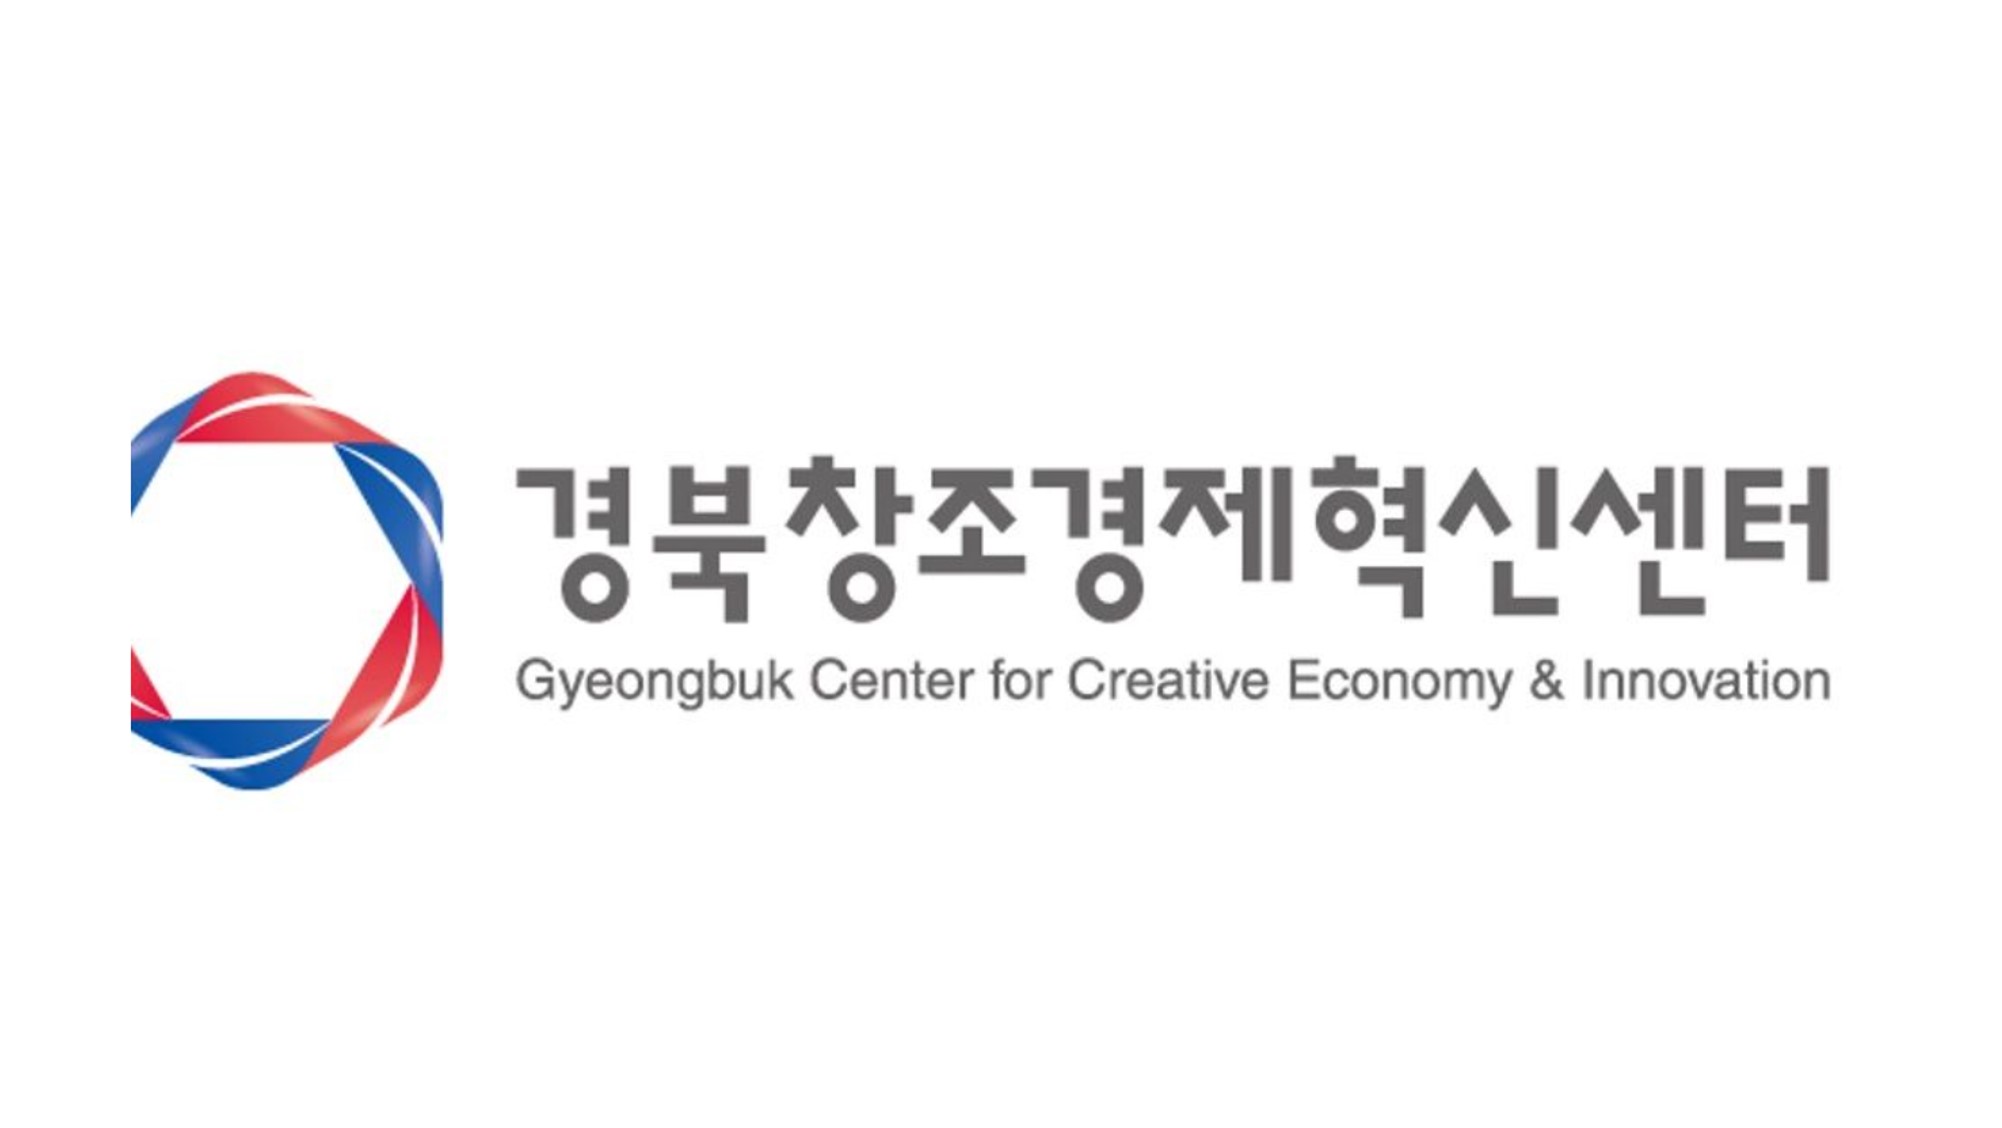 경북창조경제혁신센터, “지역 산·학·연·관 오픈이노베이션 네트워크 구축, 인증·시험 아카데미 참여기업 모집”